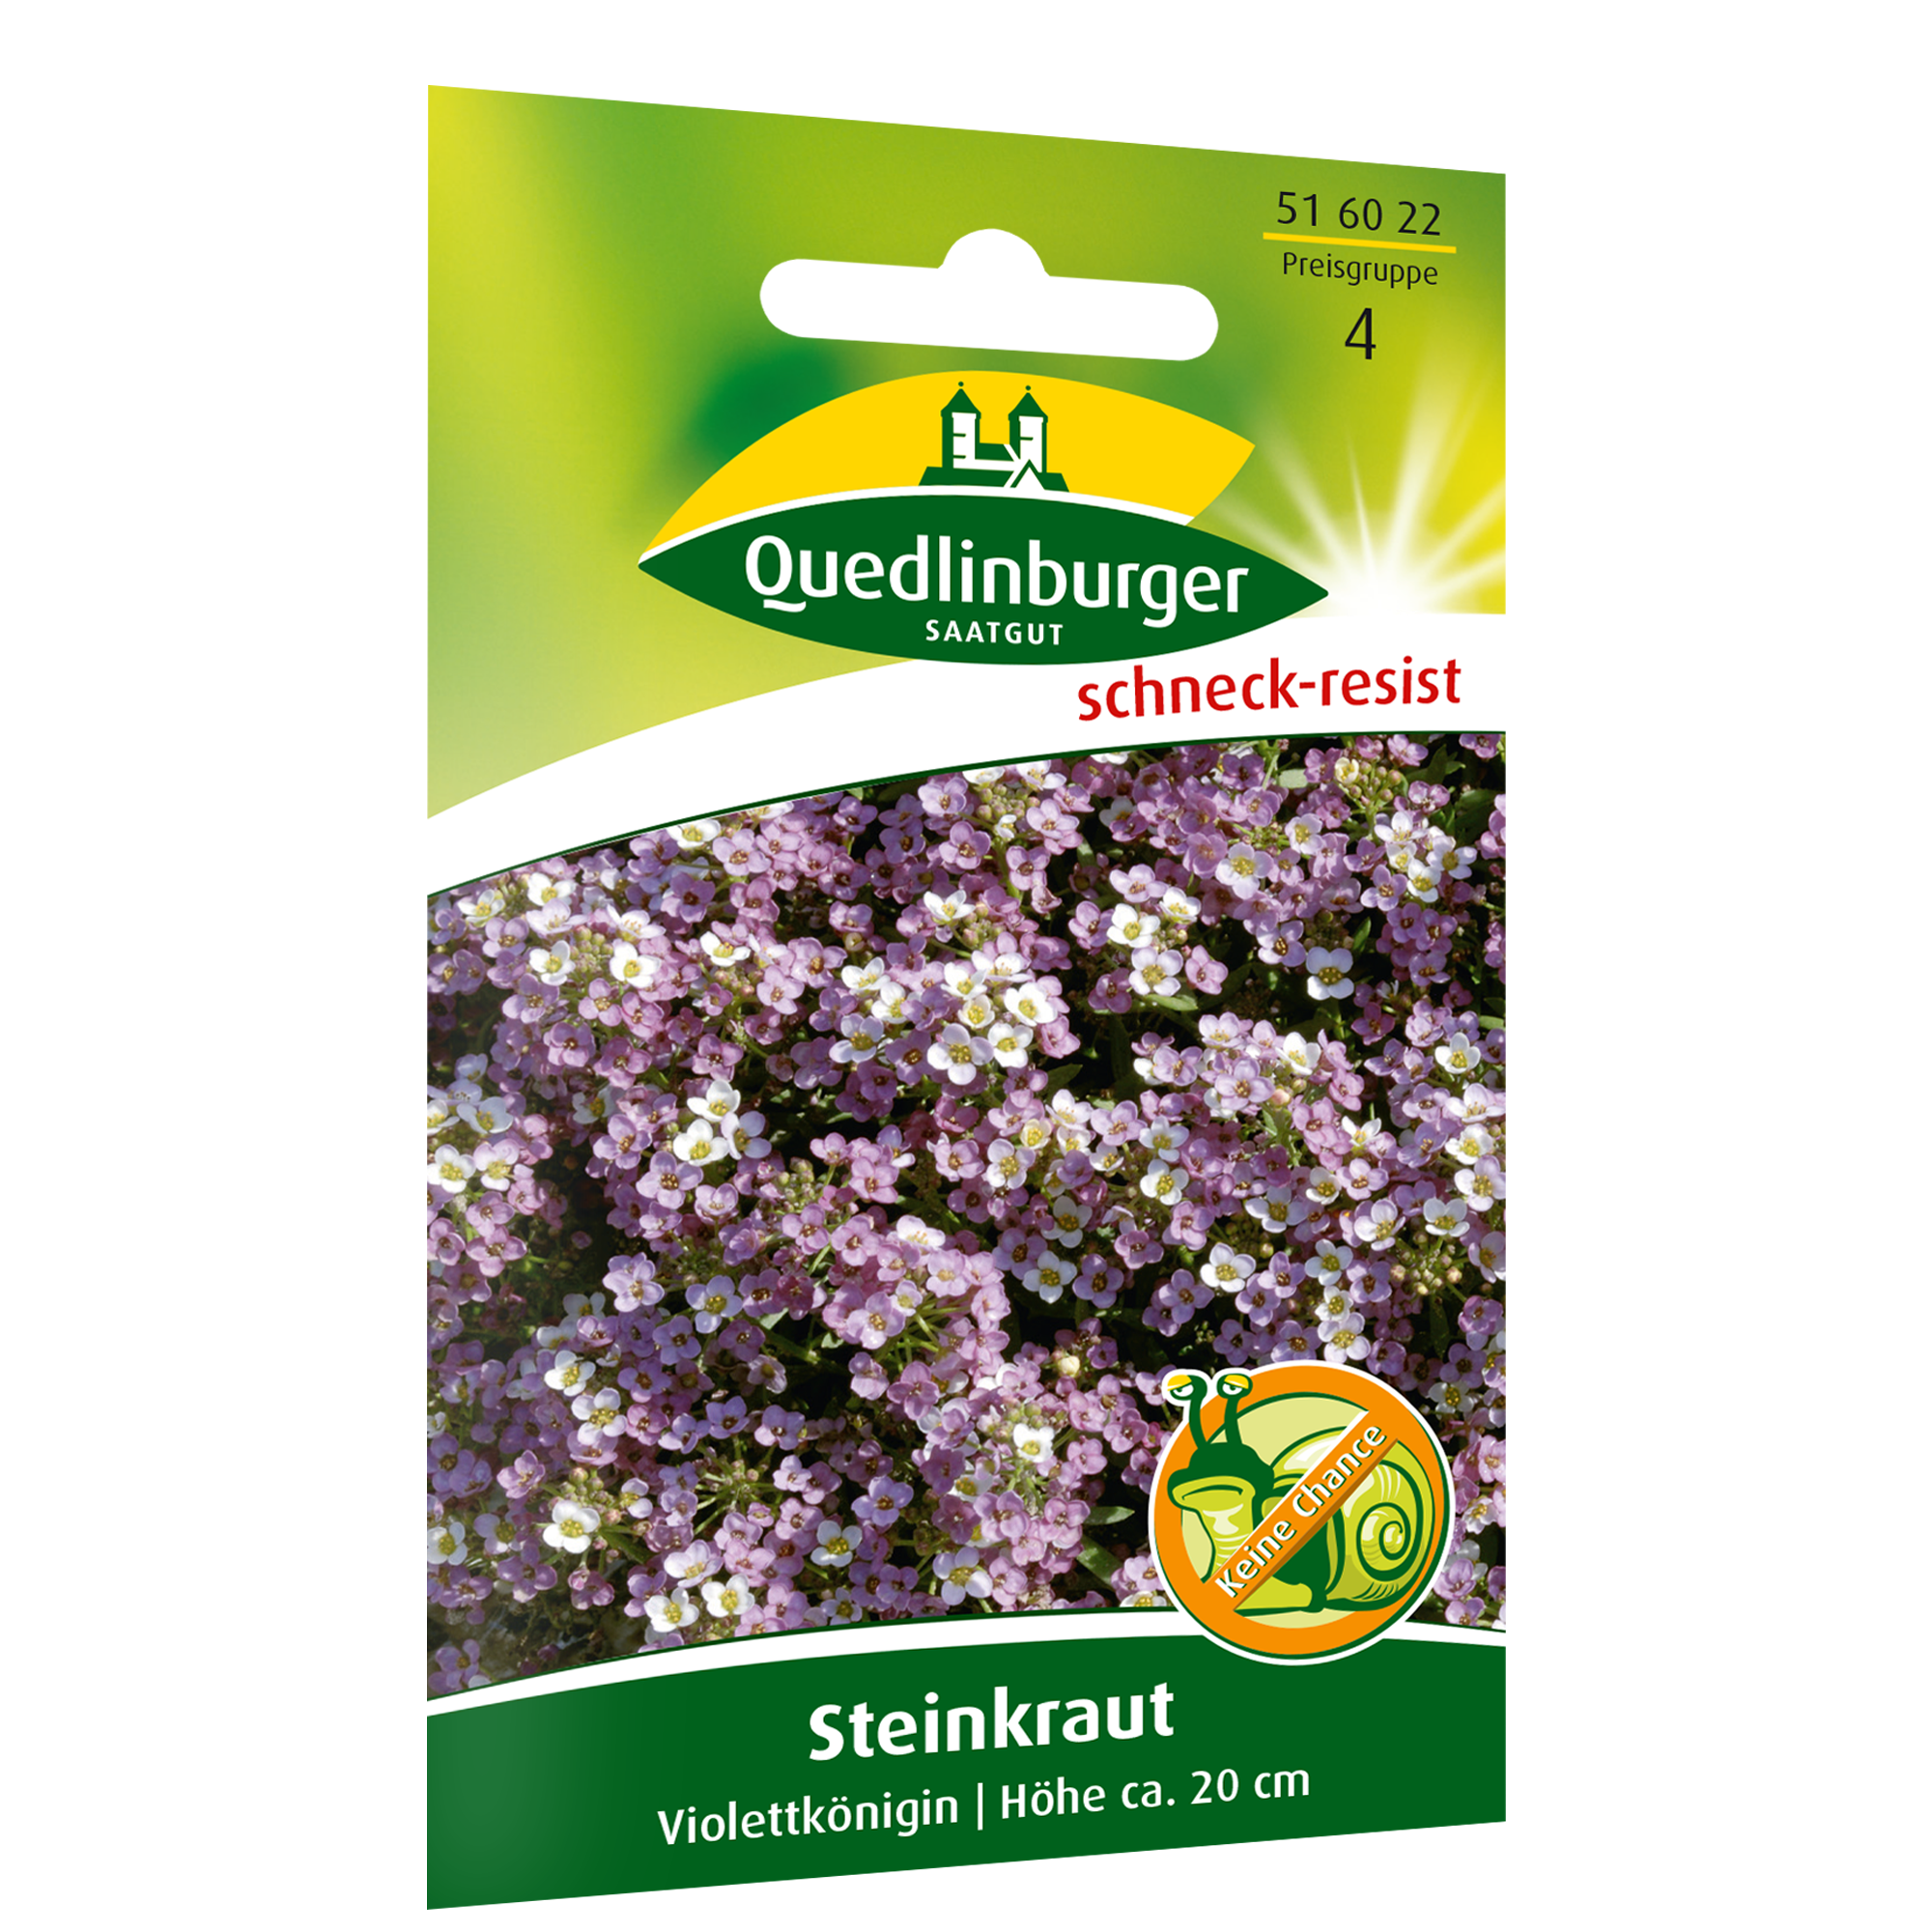 Steinkraut 'Violettkönigin' + product picture